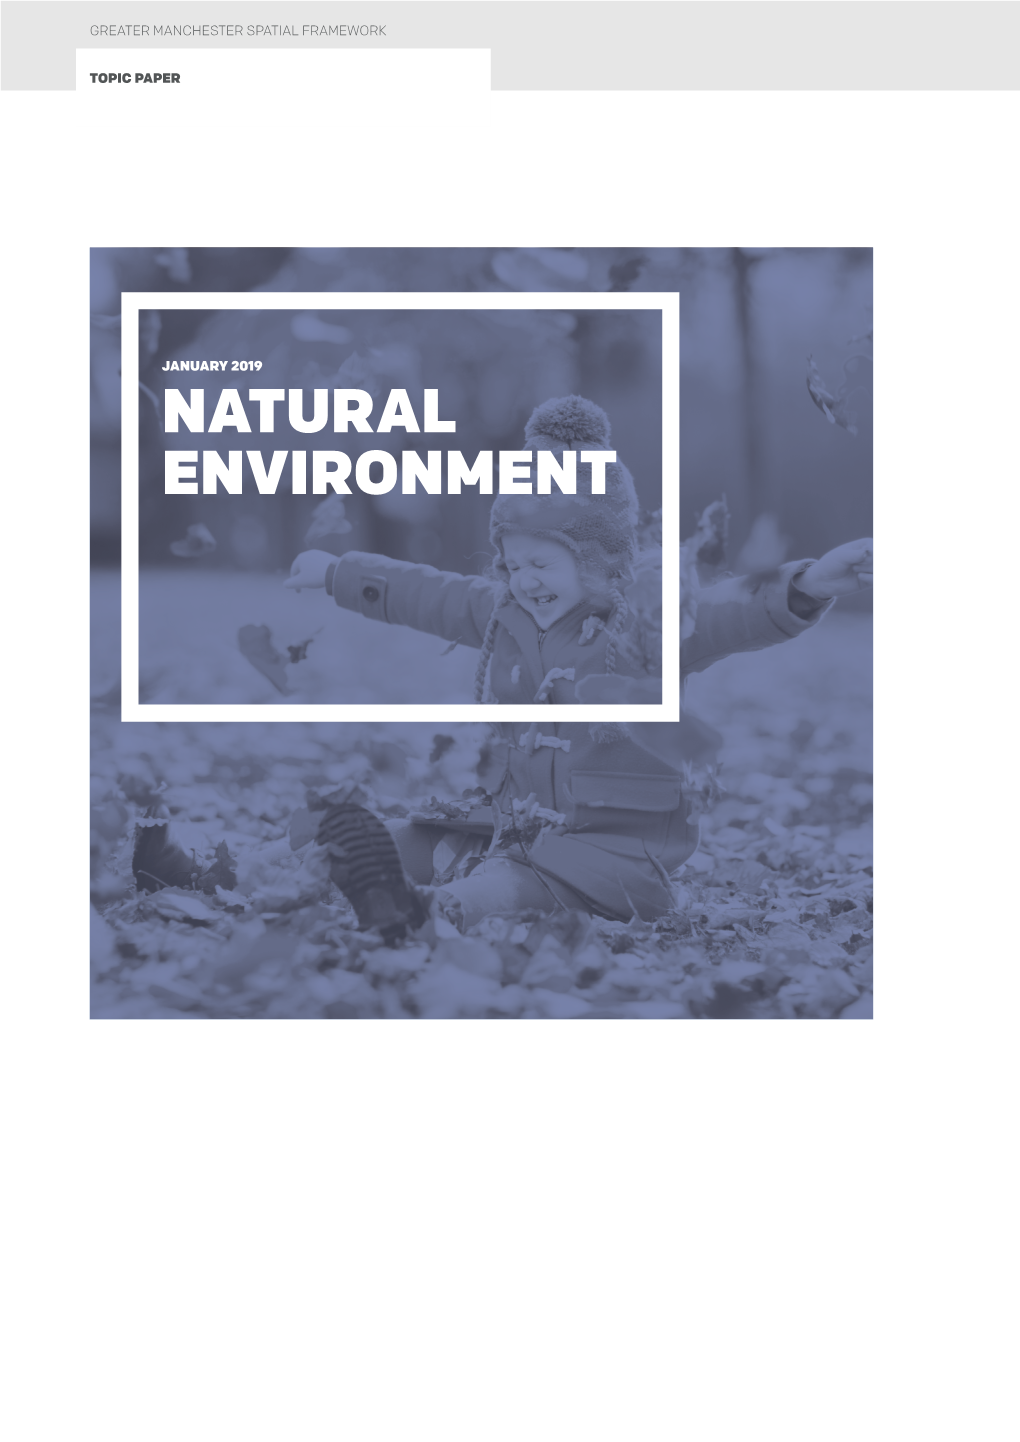 NATURAL ENVIRONMENT Natural Environment Topic Paper